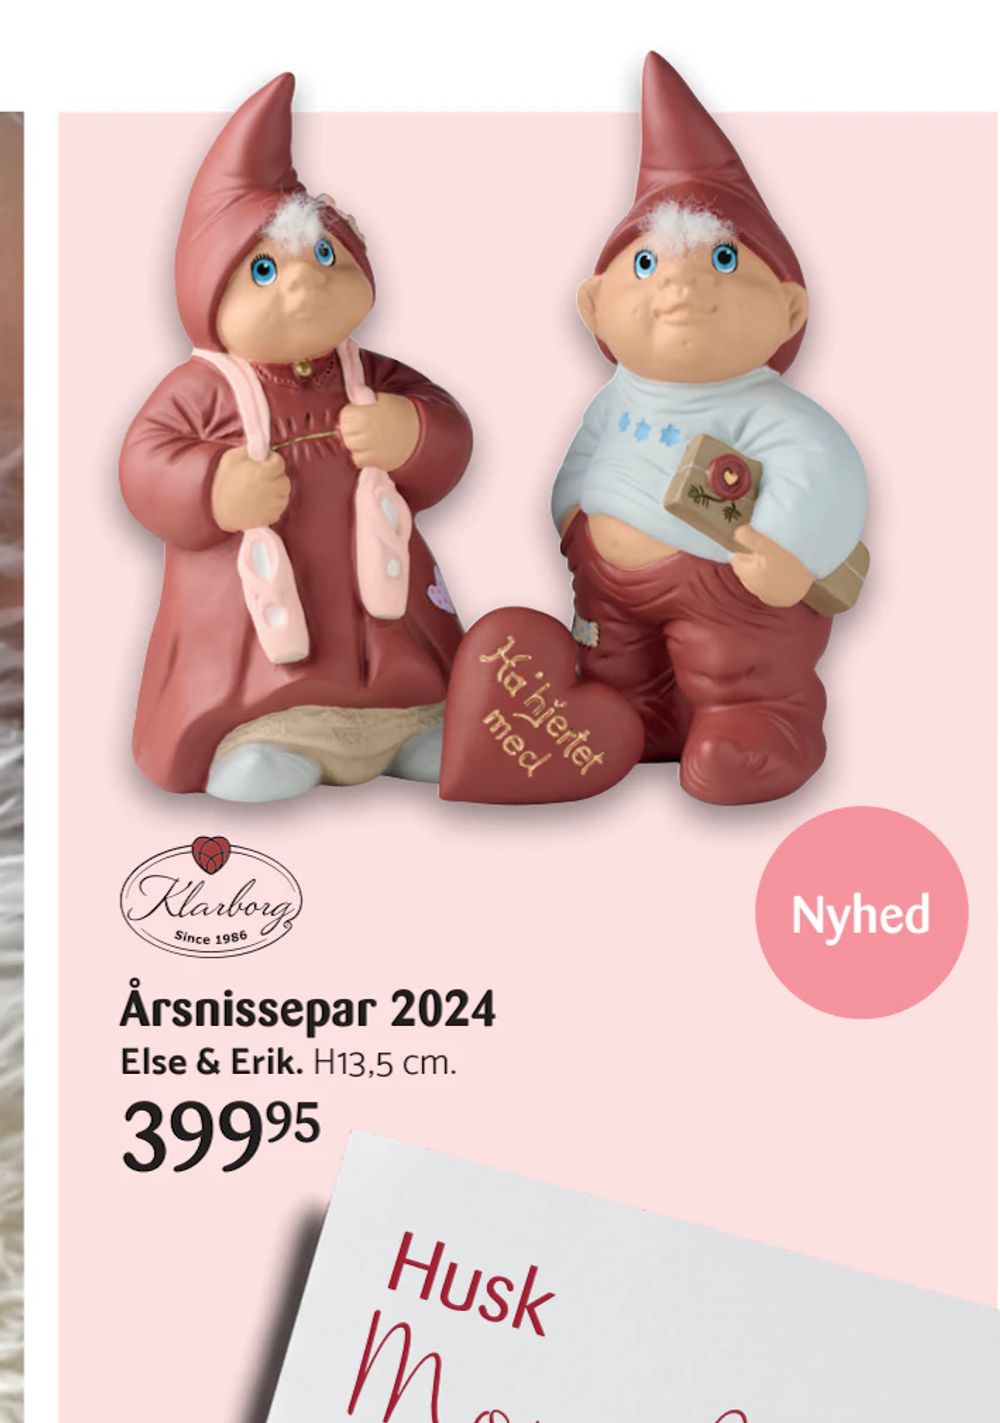 Tilbud på Årsnissepar 2024 fra Kop & Kande til 399,95 kr.